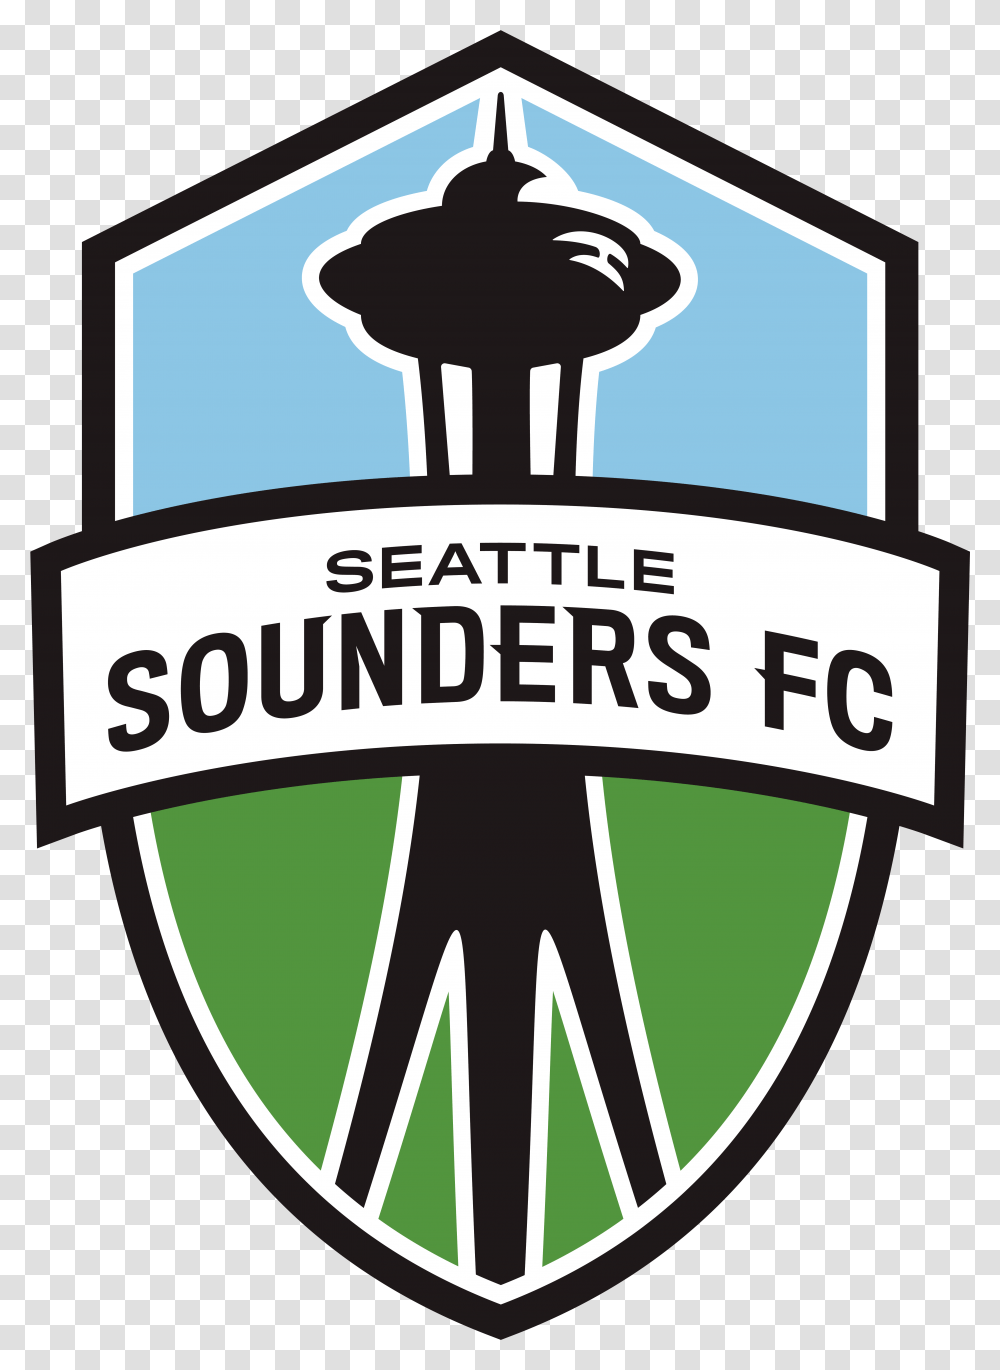 Seattle Sounders Griffin Orser Logo Seattle Sounders Fc, Symbol, Trademark, Emblem, Badge Transparent Png